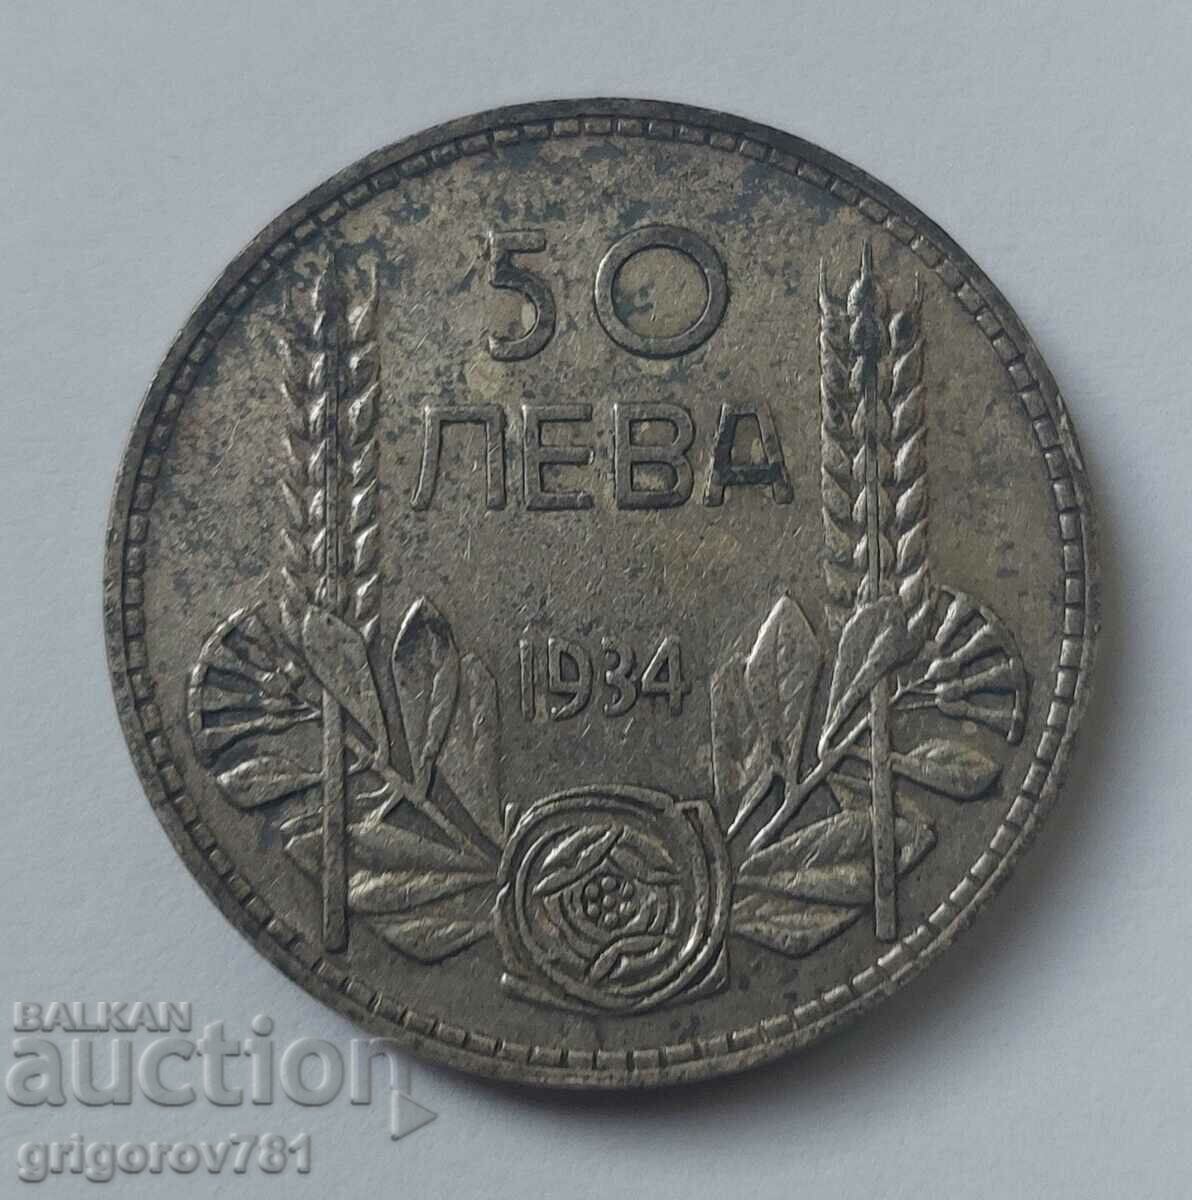 Ασήμι 50 λέβα Βουλγαρία 1934 - ασημένιο νόμισμα #19